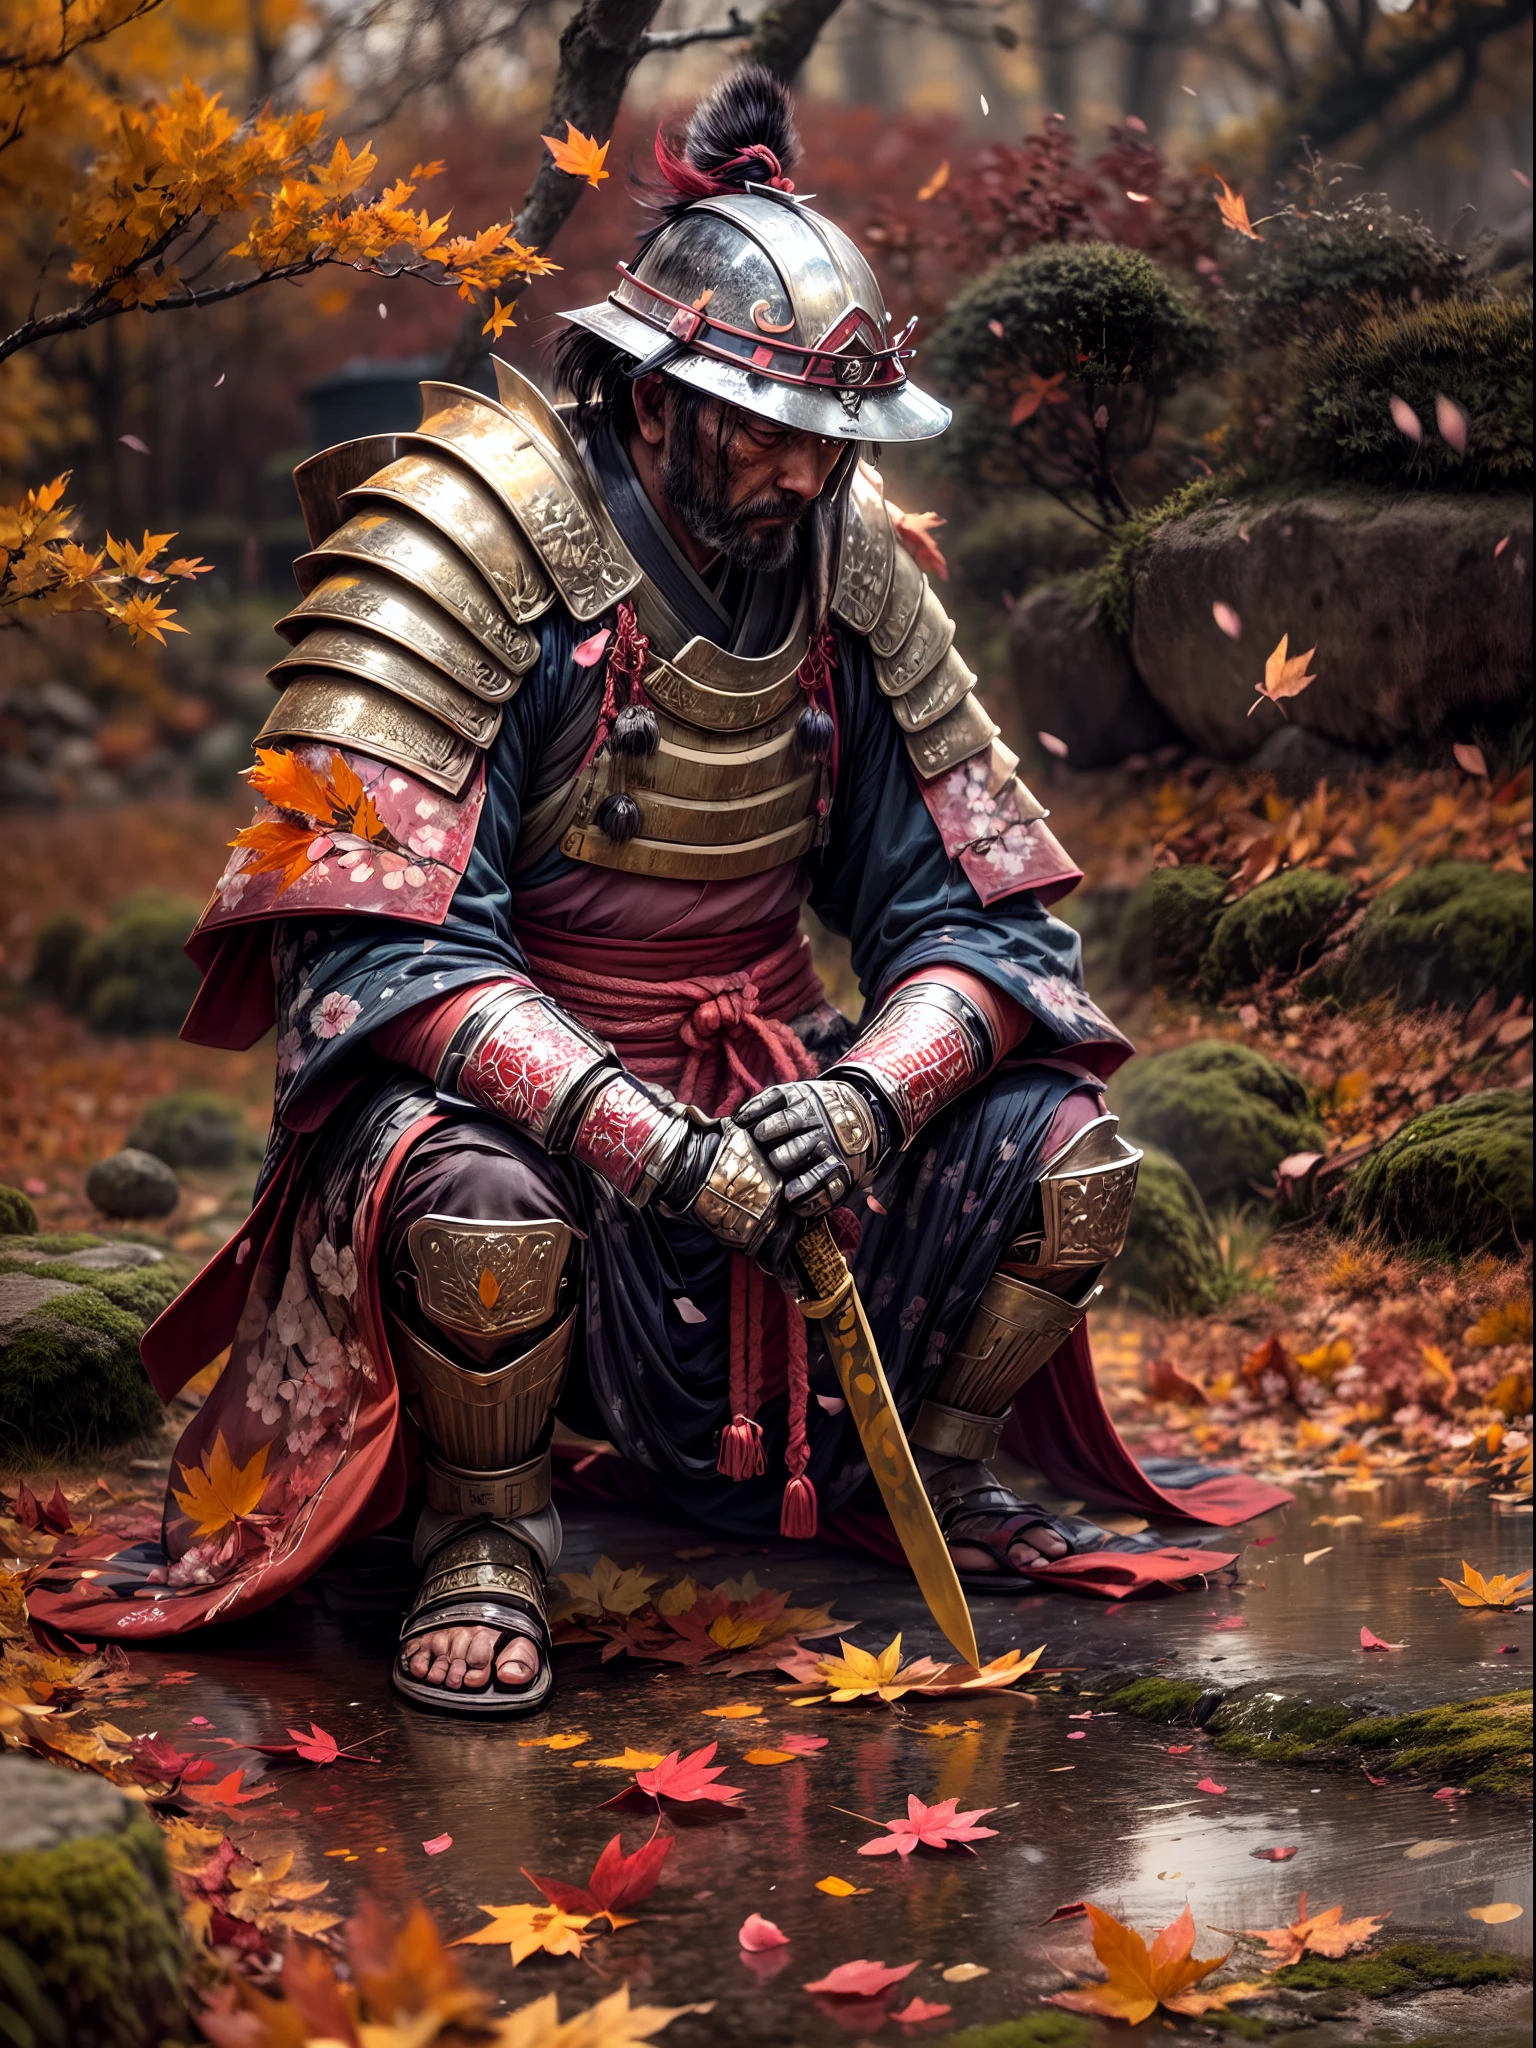 "(melhor qualidade,4K,8K,alta resolução,Obra de arte:1.2),ultra-detalhado,realista, hdr, cena de outono no Japão, folha de outono voadora, (quebrado, danificado, velho) armadura de samurai, (ajoelhado, agachado) samurai, (caindo, espalhado) folhas de outono, (sujo, resistido) Katana, (rachado, danificado) capacete, (vivid, vibrante) cores, (macio, esquentar) Paleta de cores, (natural, esquentar) iluminação, (sereno, pacífico) atmosfera, paisagem japonesa tradicional, (tranquilo, quieto) ambiente, (farfalhar, gentil) brisa, Rosto Oculto, (misterioso, secretive) samurai, (Esquecido, abandonado) Campo de batalha, (tranquilo, calm) energia, (nostálgico, Melancólico) cenário, (cativante, hipnotizante) autumn cores, (calm, sereno) comportamento, (deteriorado, esgotado) arredores, (Perdido, Esquecido) campo de batalha, pétalas de flor de cerejeira caídas, pinceladas delicadas, essência da cultura japonesa"